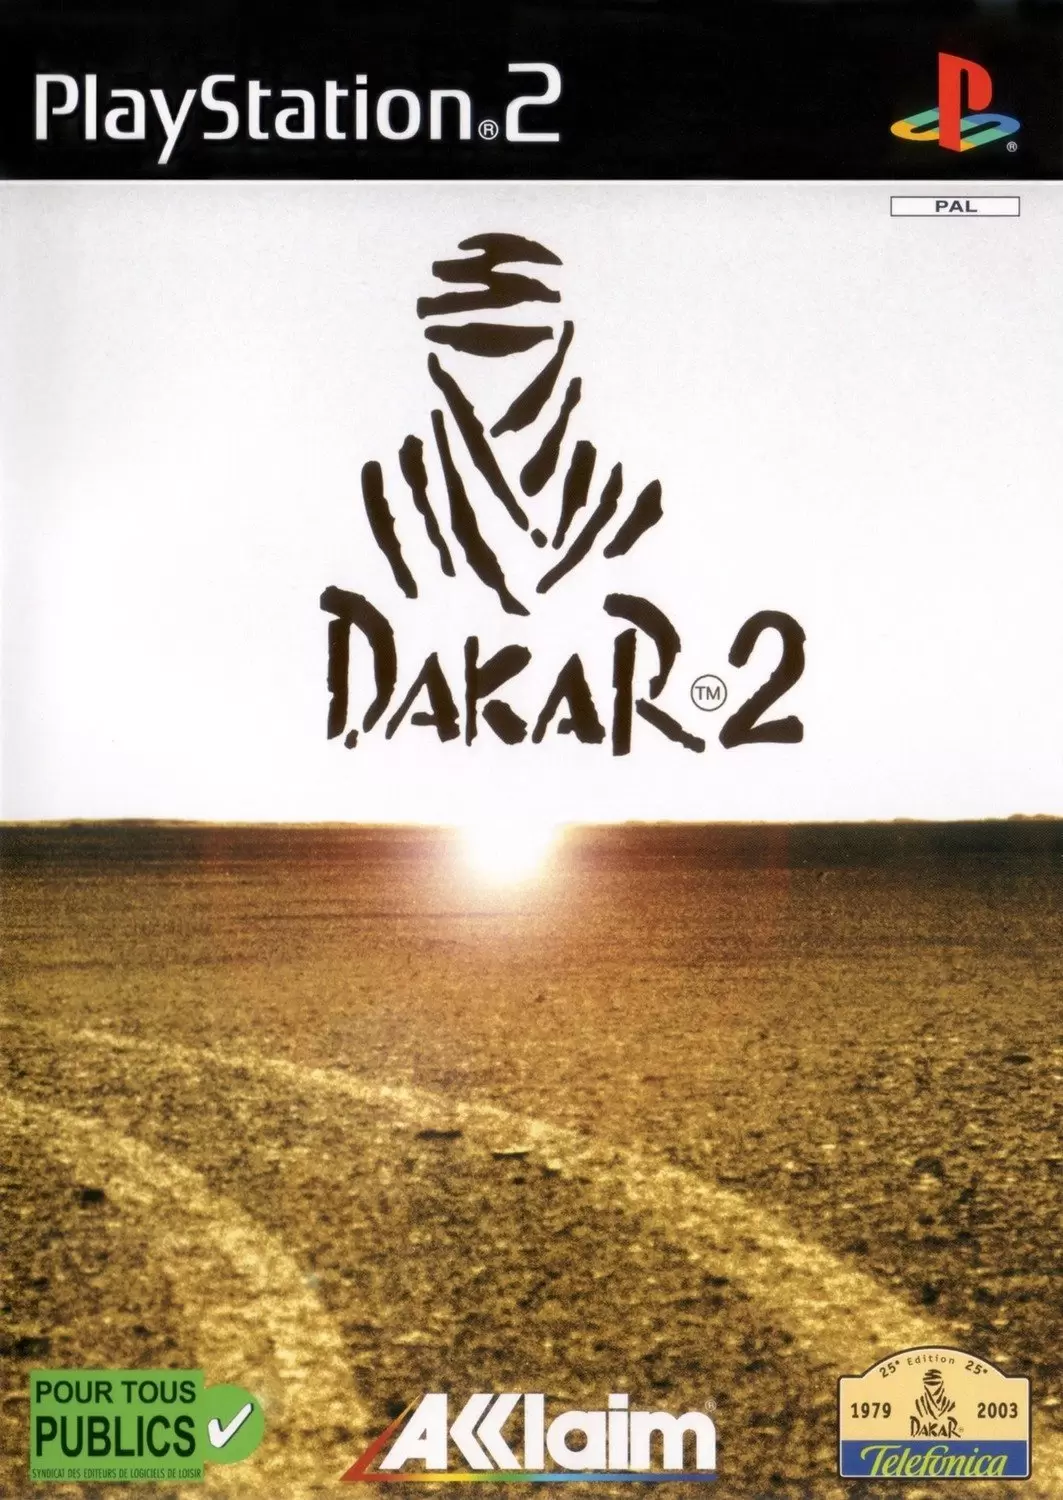 PS2 Games - Dakar 2